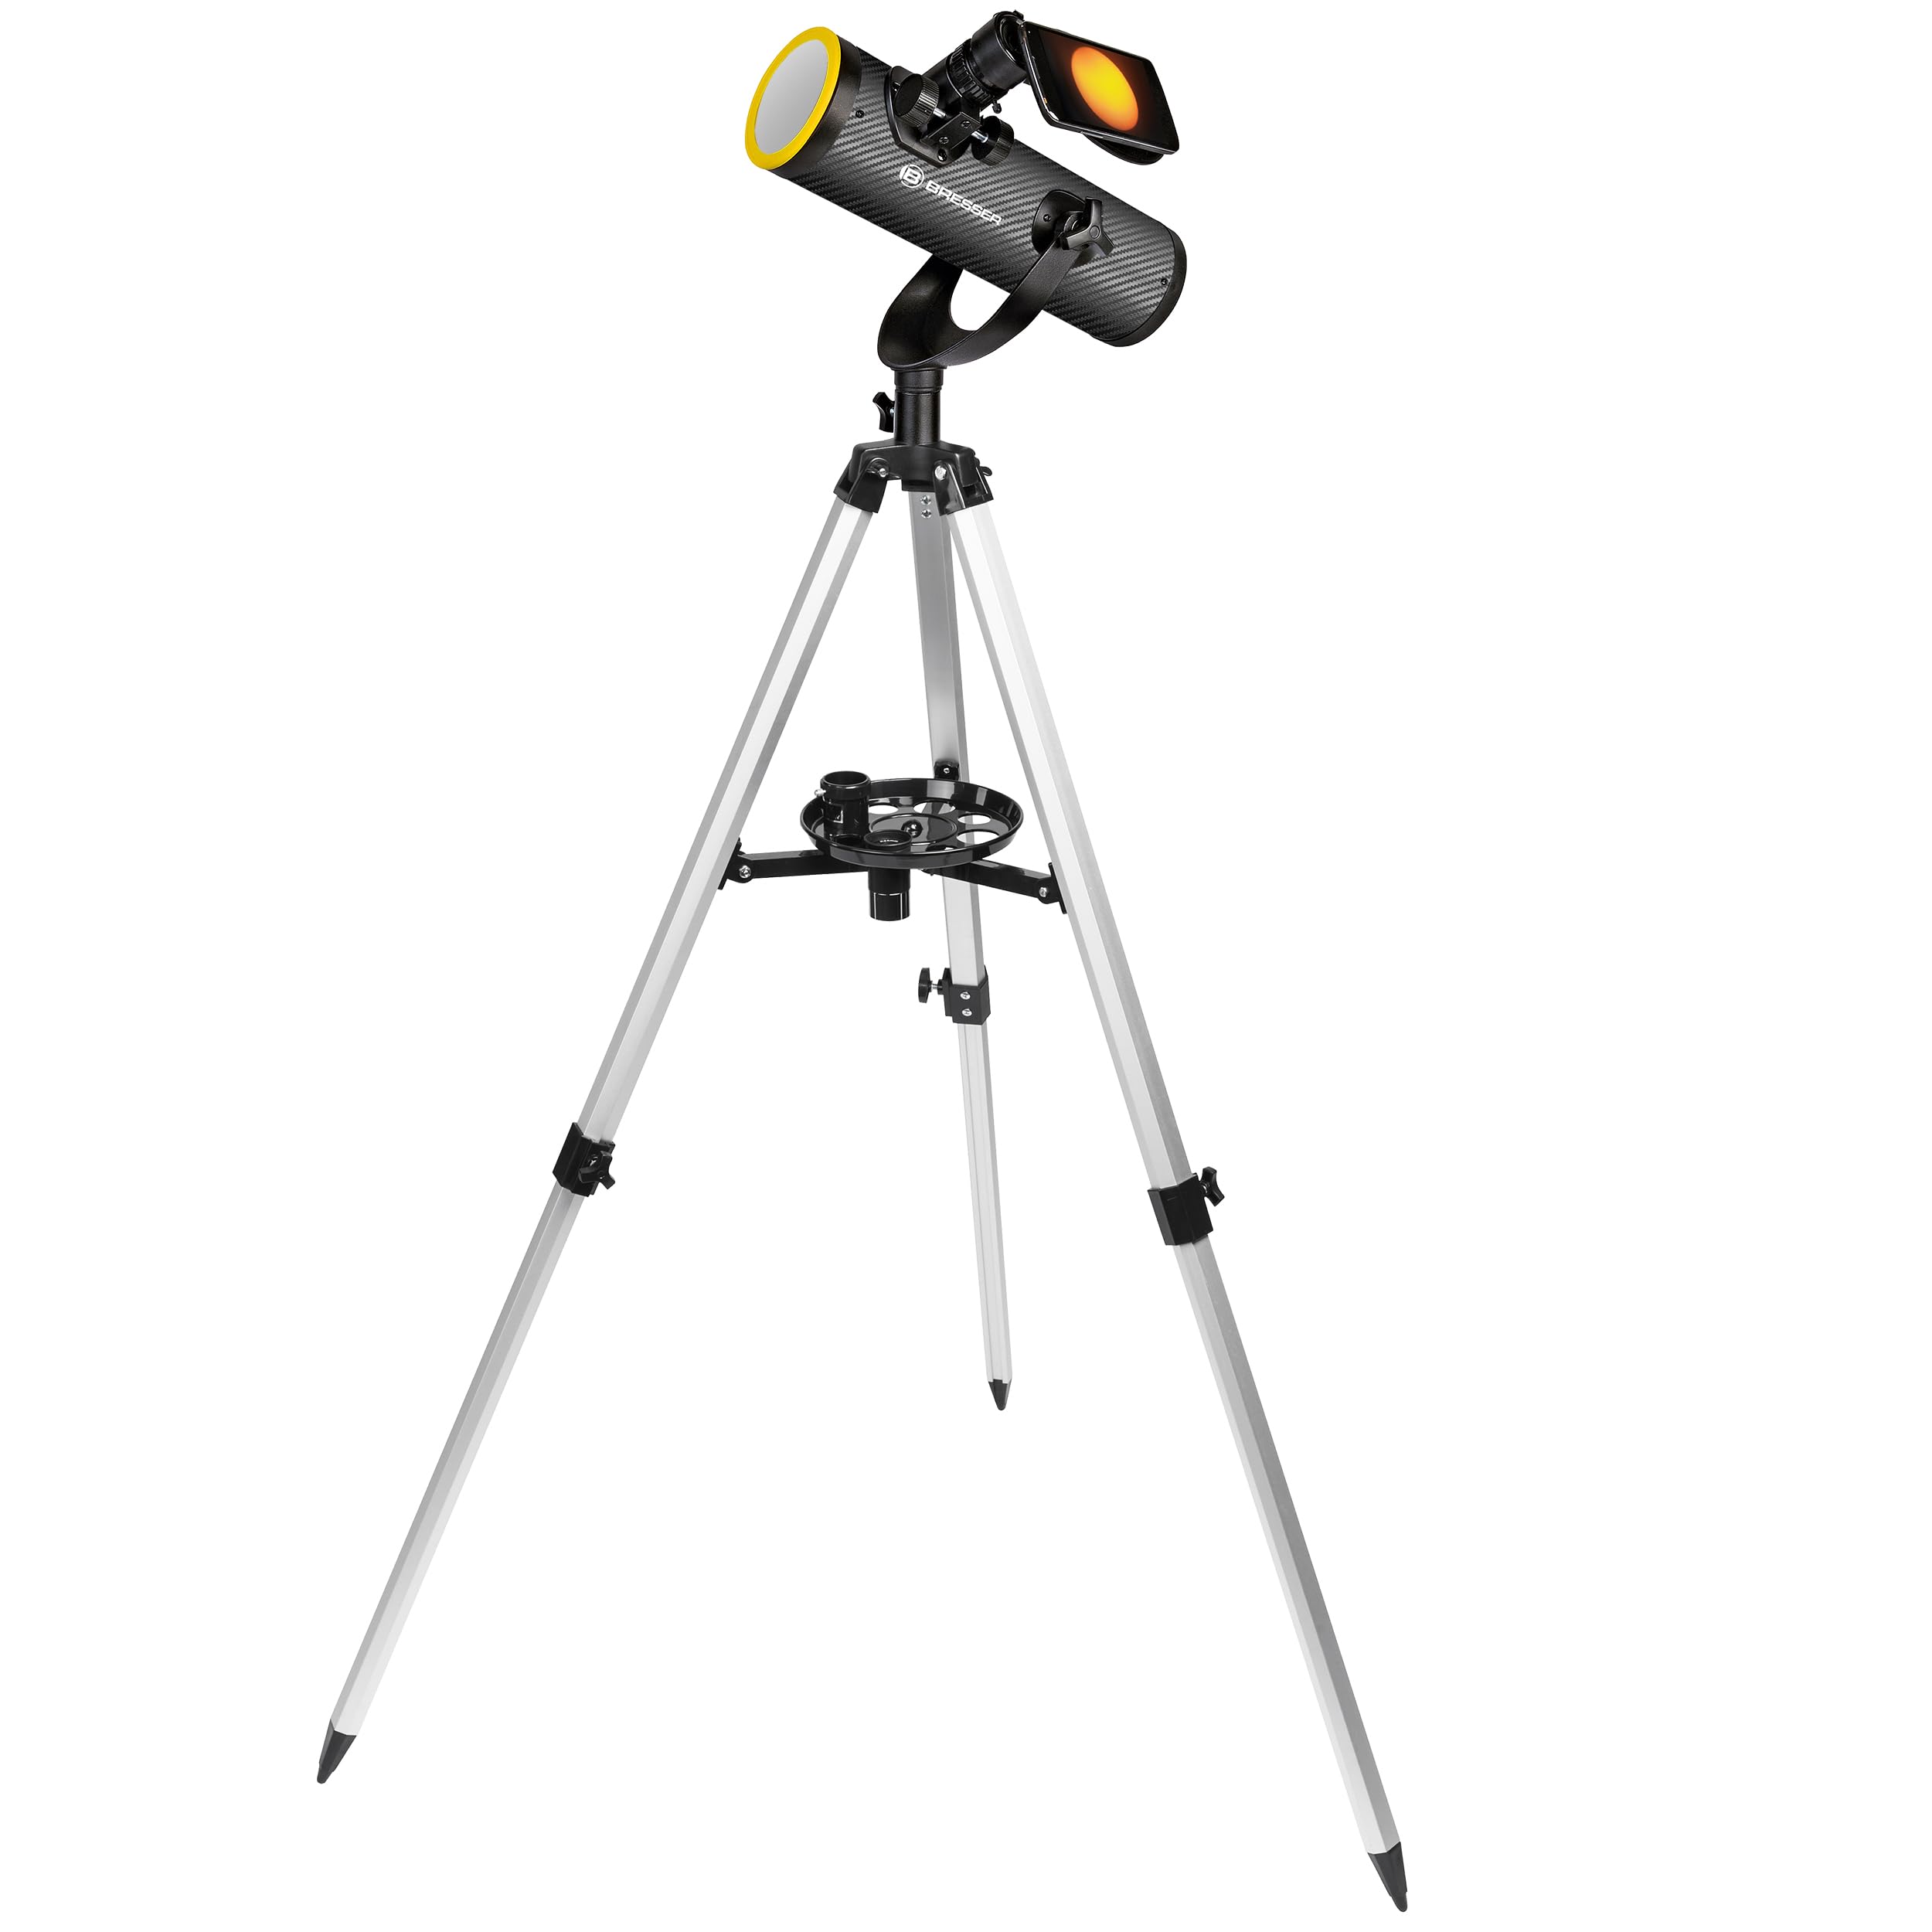 Bresser Teleskop Solarix AZ 76/350 mit Stativ für astonomische Beobachtungen bei Nacht und für Sonnenbeobachtung mit Spezial-Filter für gefahrlose Sonnenbeobachtung, inklusive umfangreichen Zubehör